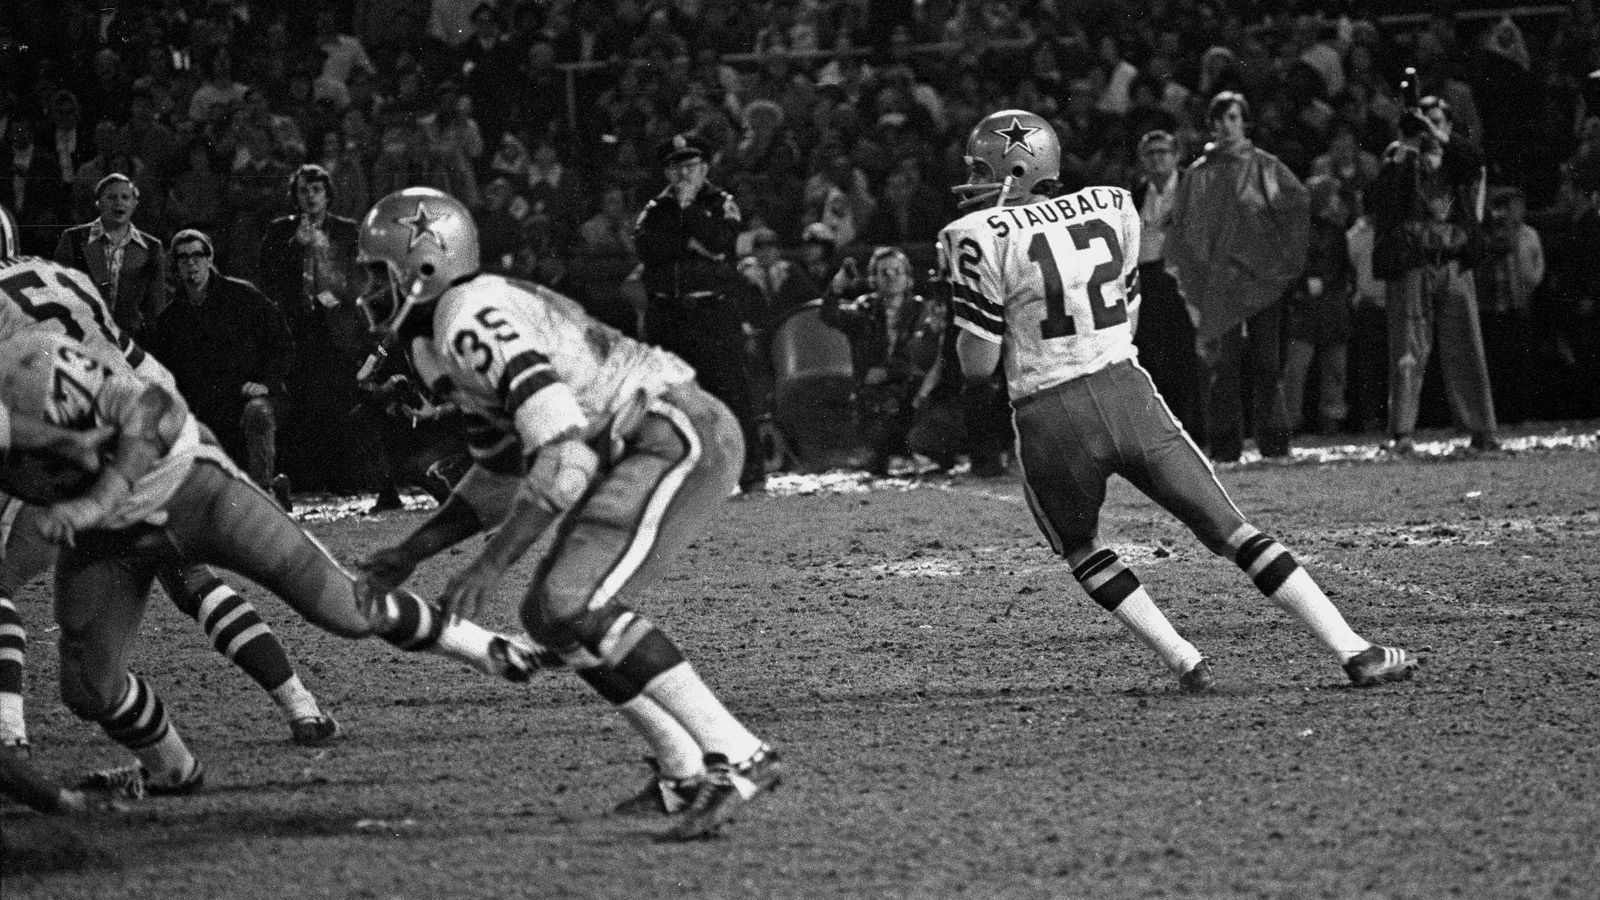 
                <strong>1. Playoff-Duell der Dallas Cowboys und der San Francisco 49ers</strong><br>
                1970 fand das erste Playoff-Spiel zwischen beiden Teams statt. In einem umkämpften NFC Championship Game gewannen die Cowboys auswärts mit 17:10, verloren aber Super Bowl V unter Head Coach Tom Landry gegen die Baltimore Colts. Jener Tom Landry prägte mit seinem neuen Starting Quarterback Roger Staubach daraufhin eine Ära. 1971 kam es wieder zum NFC Title Game zwischen Cowboys und 49ers, wieder behielten die Cowboys die Oberhand (14:3). Den anschließenden Super Bowl gewannen die Cowboys diesmal gegen die Miami Dolphins. 
              